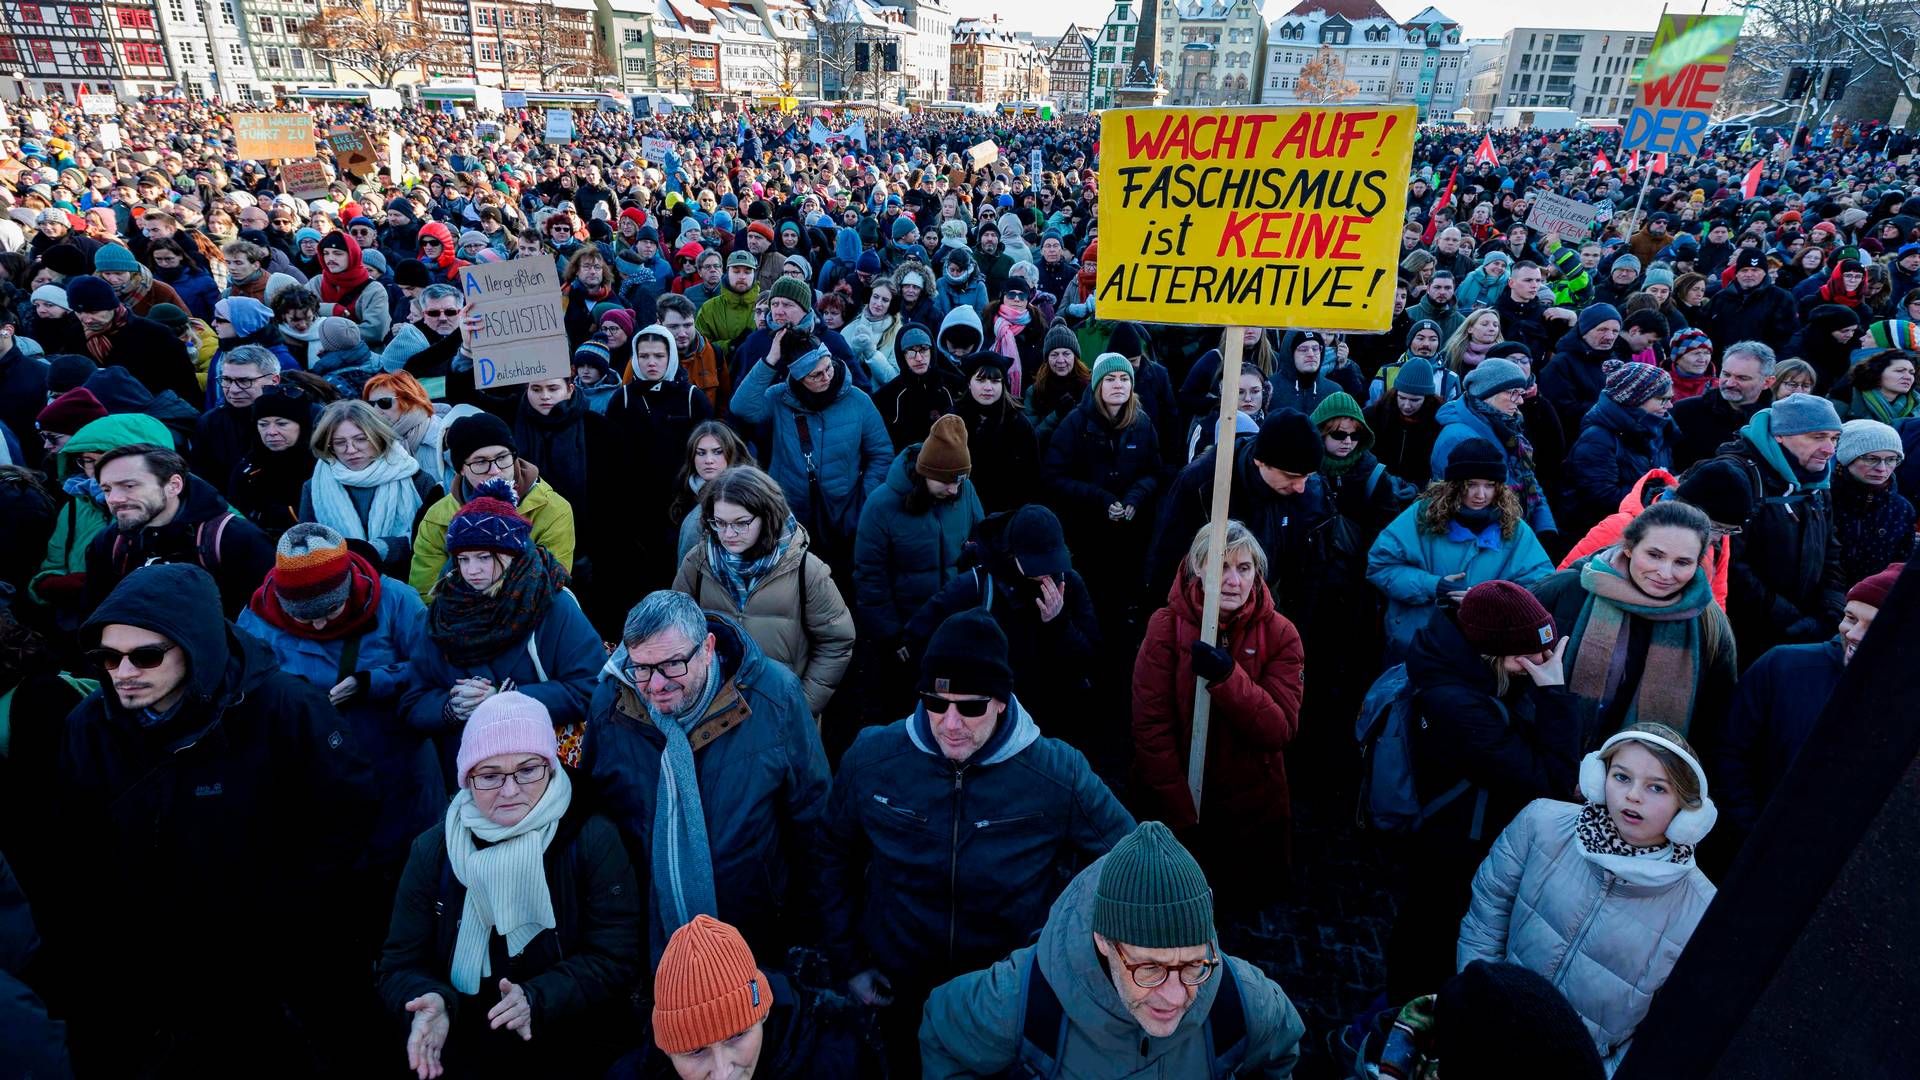 Hundredtusindvis demonstrerede i sidste weekend mod racisme og facisme i Tyskland. Det sker efter, at det tyske højrefløjsparti AFD vinder frem. | Foto: Jens Schlueter/AFP/Ritzau Scanpix